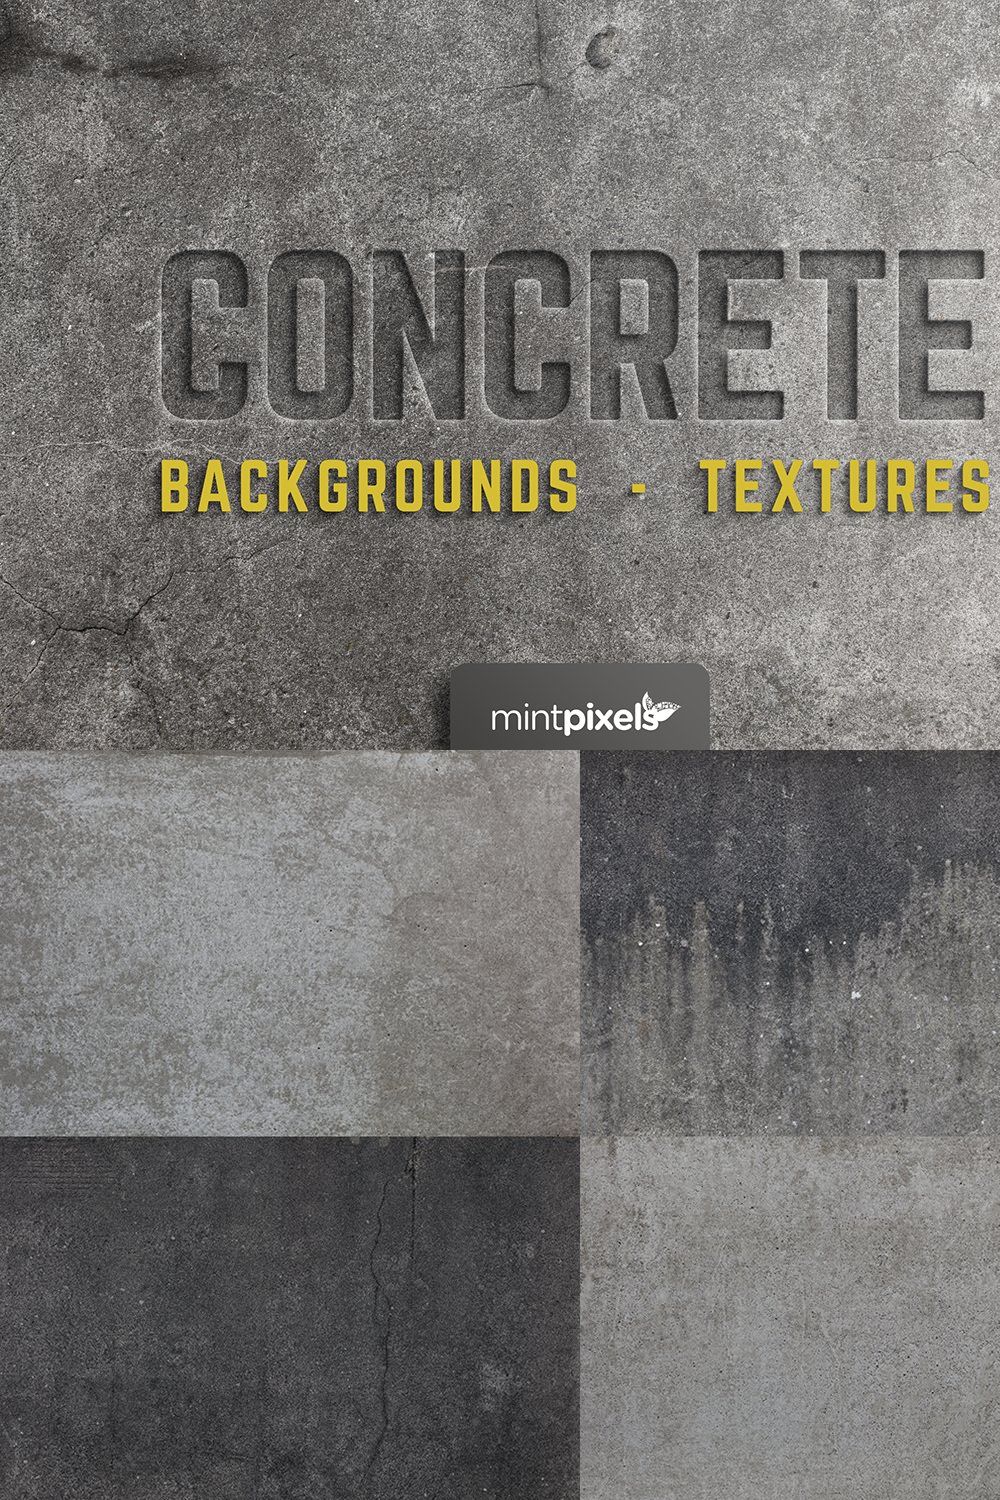 30 Concrete Textures / Backgrounds pinterest preview image.